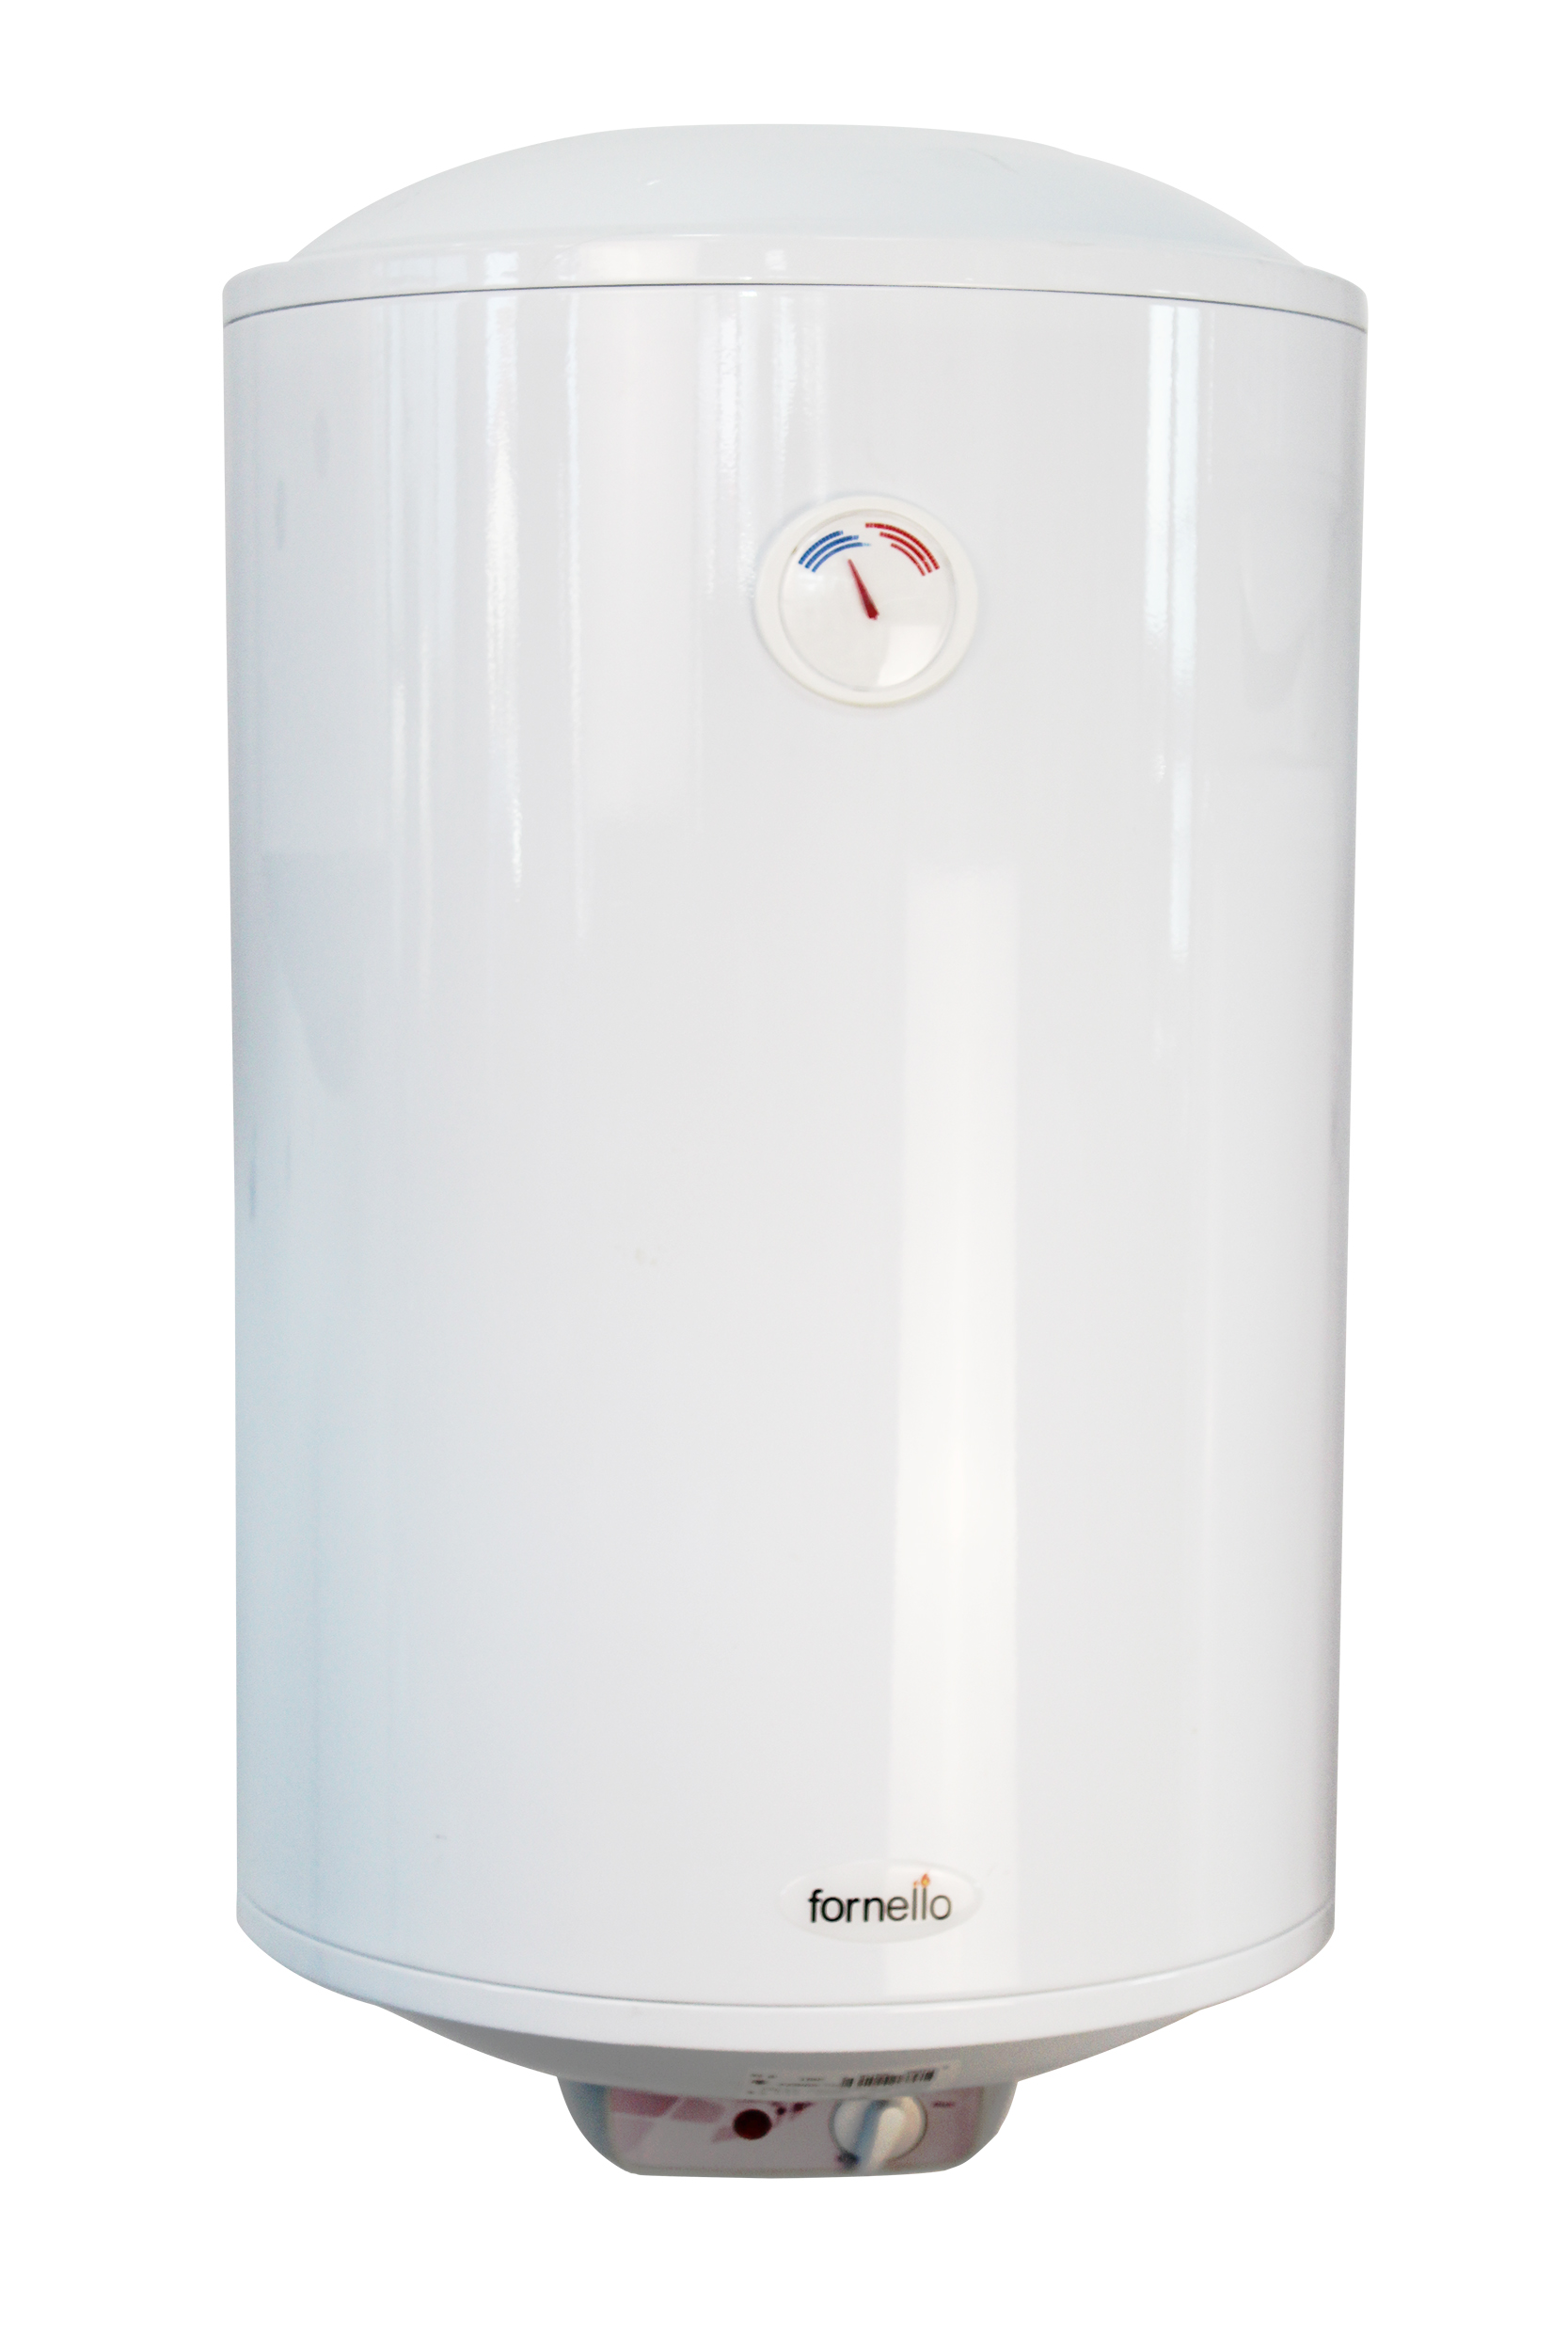 Boiler electric Fornello Titanium Plus 80 litri, 2000 watt, reglaj extern al temperaturii, emailat cu titan 2000